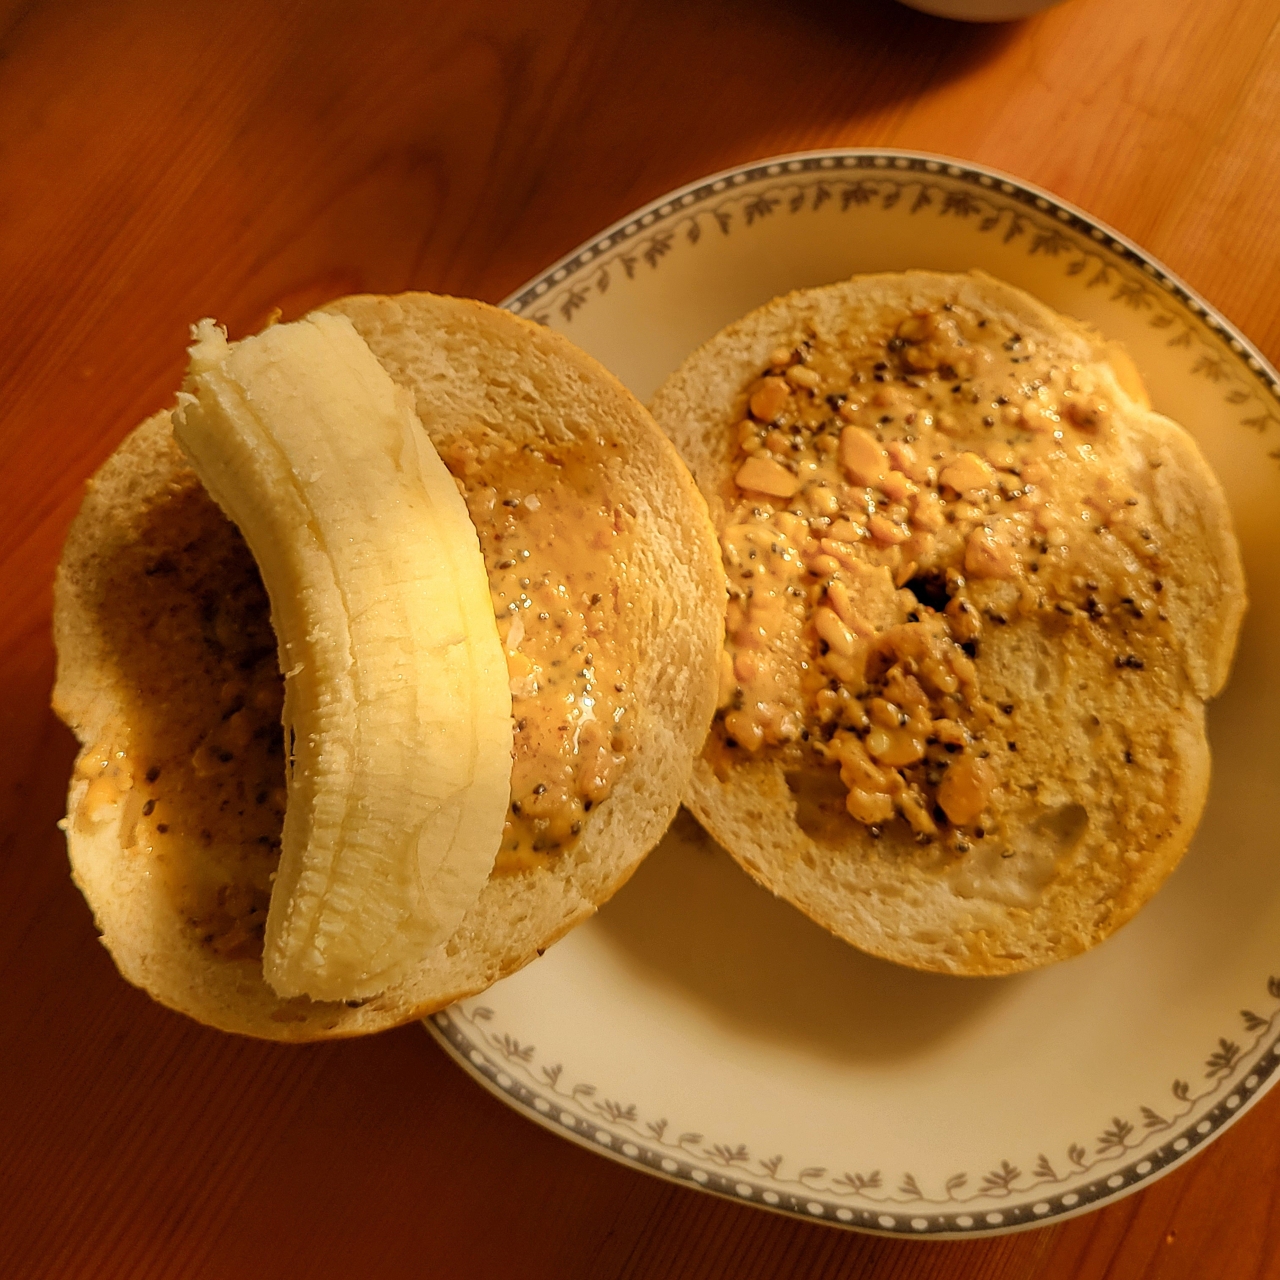 香蕉泥花生酱三明治（我的食欲稳定器）| 健康·三餐